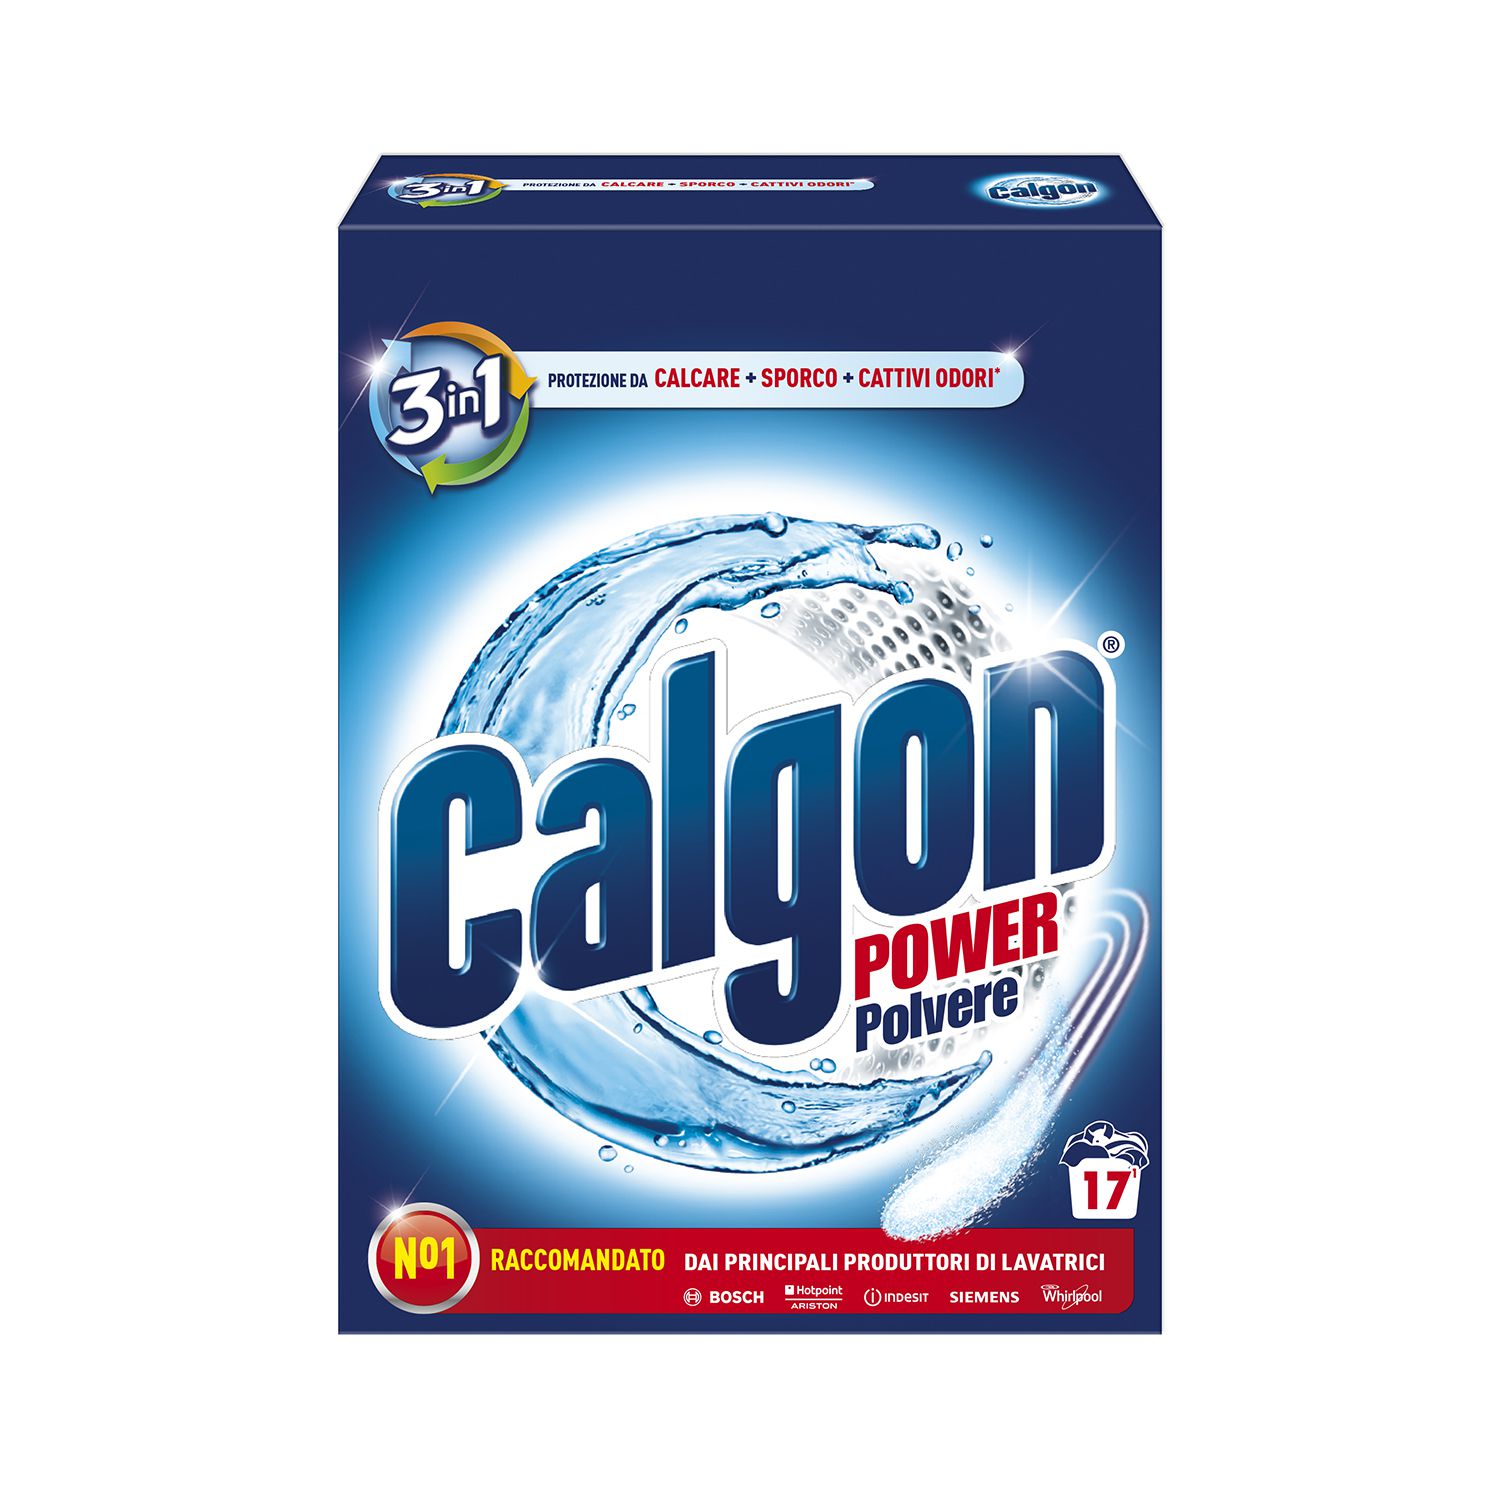 Calgon 3in1 Polvere: protezione e pulizia della tua lavatrice